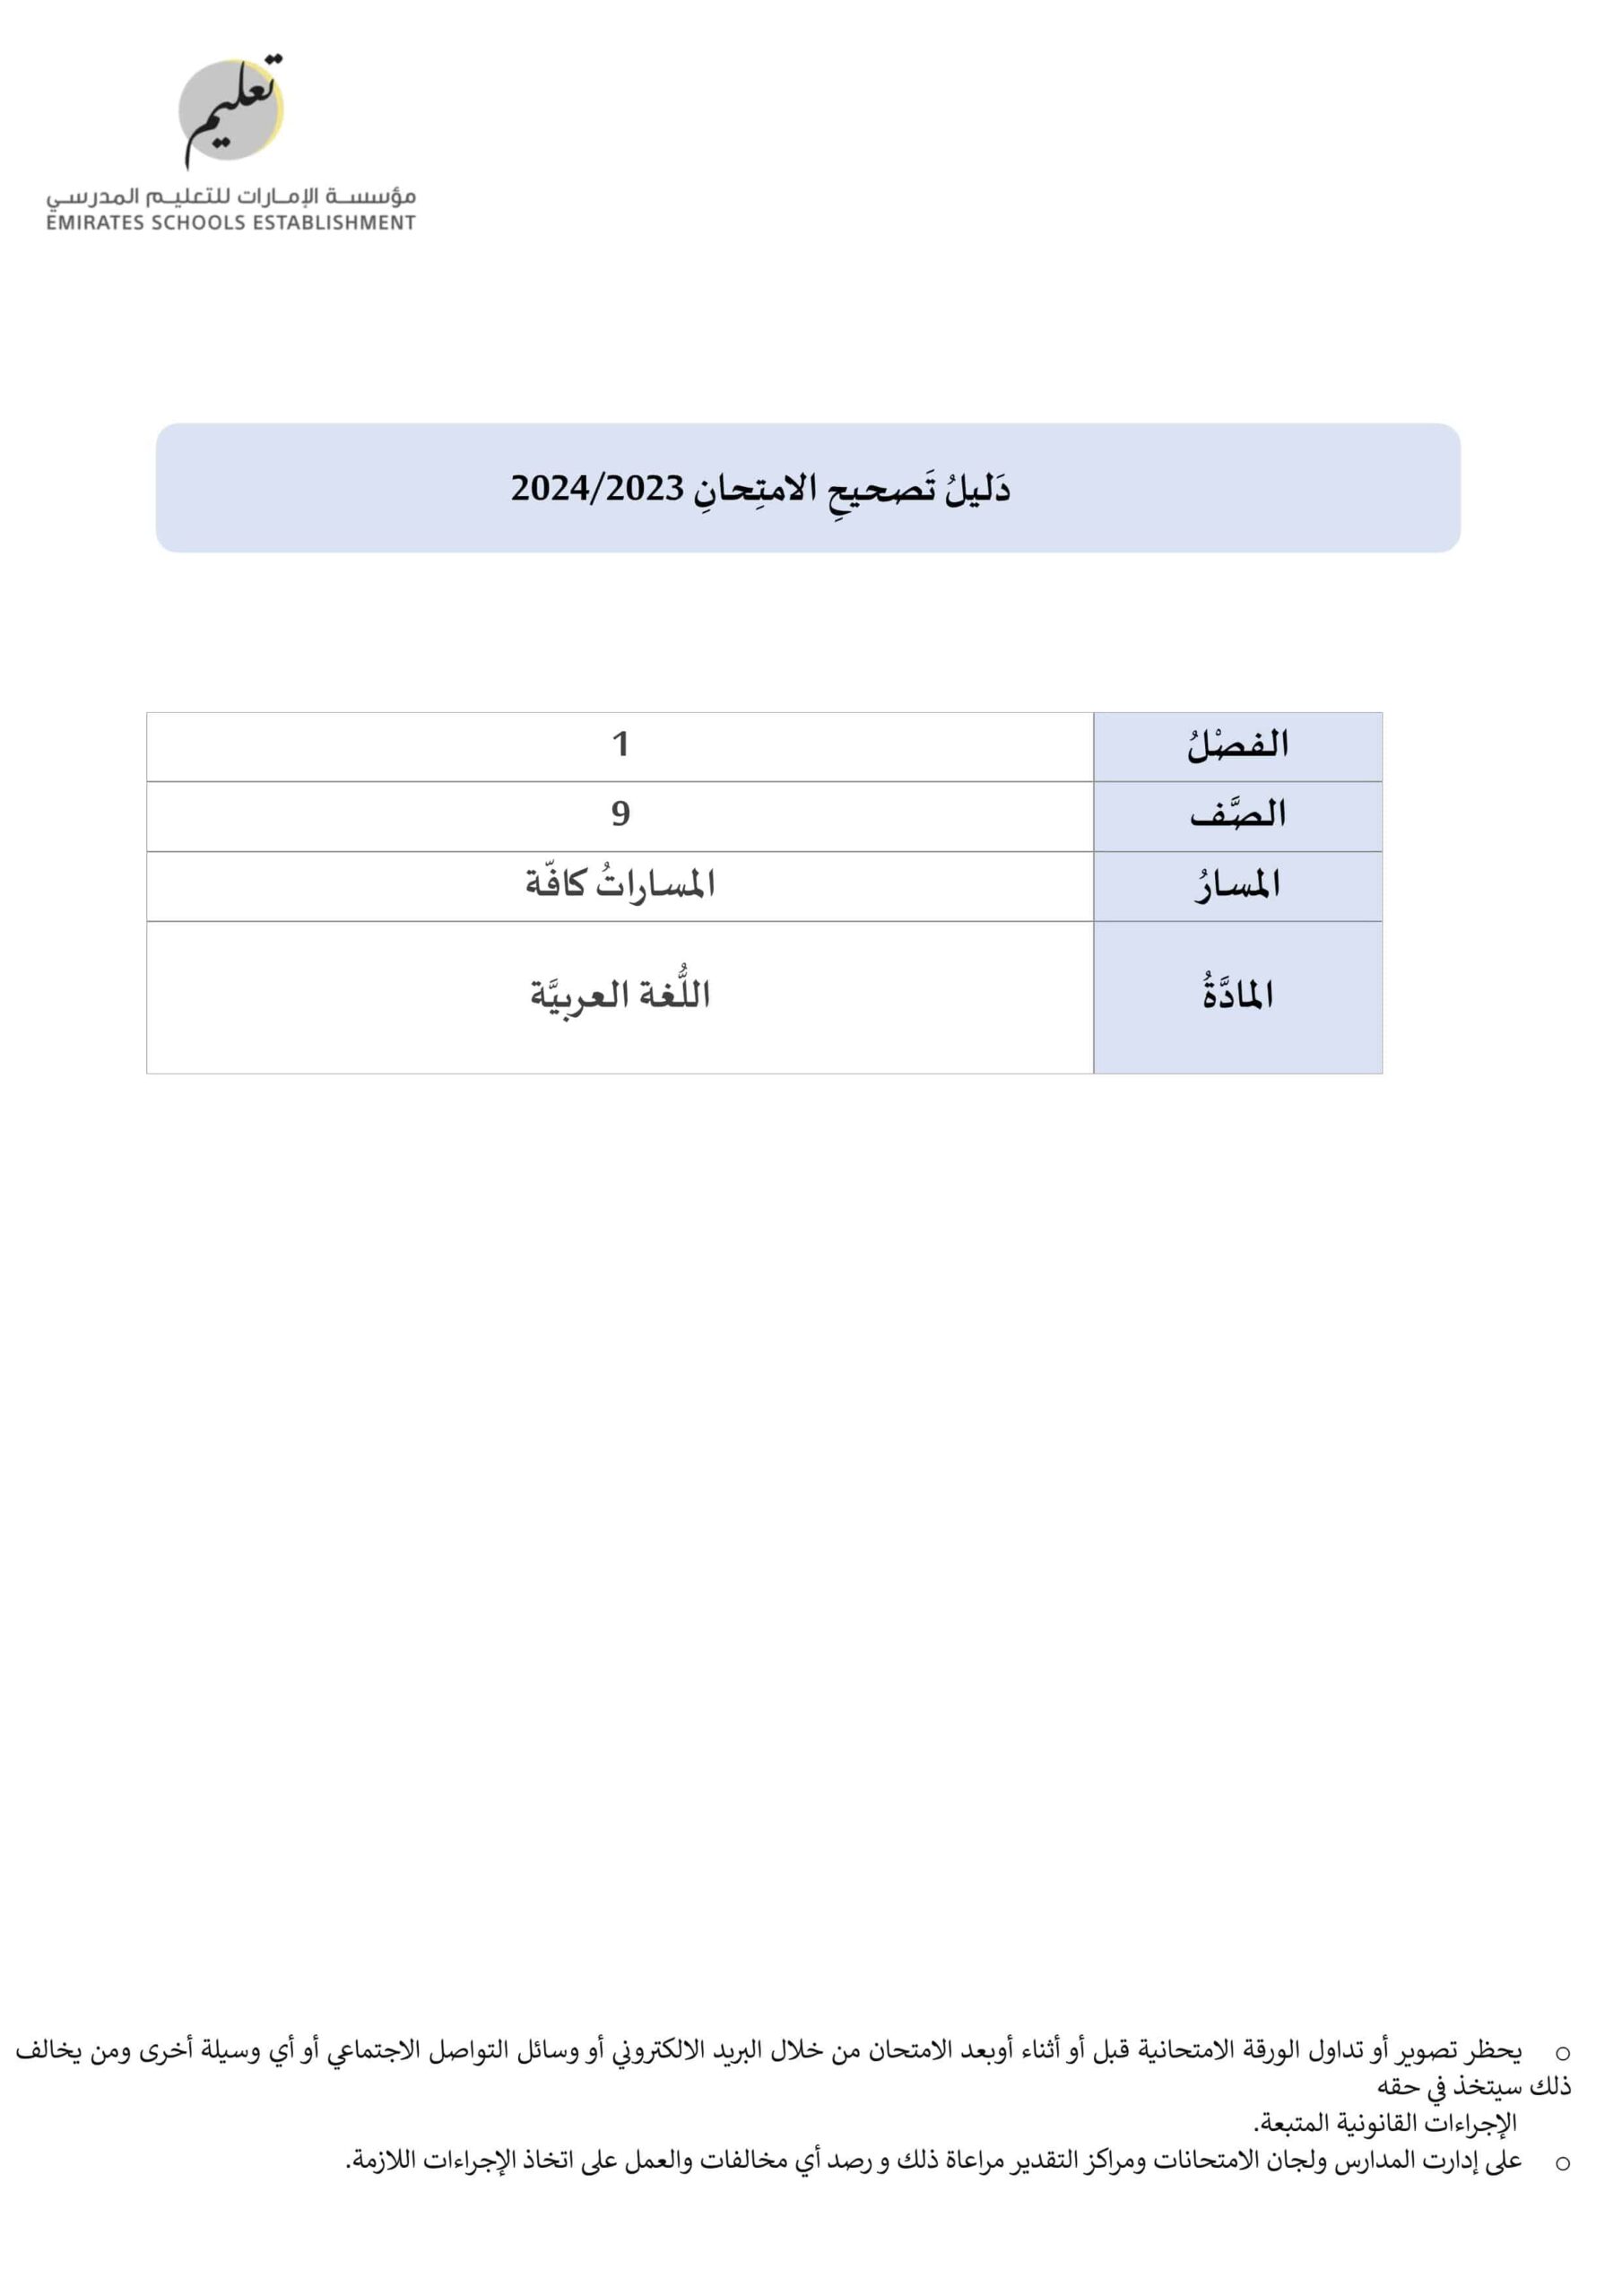 دليل تصحيح امتحان نهاية الفصل الدراسي الأول اللغة العربية الصف الصف التاسع 2023-2024